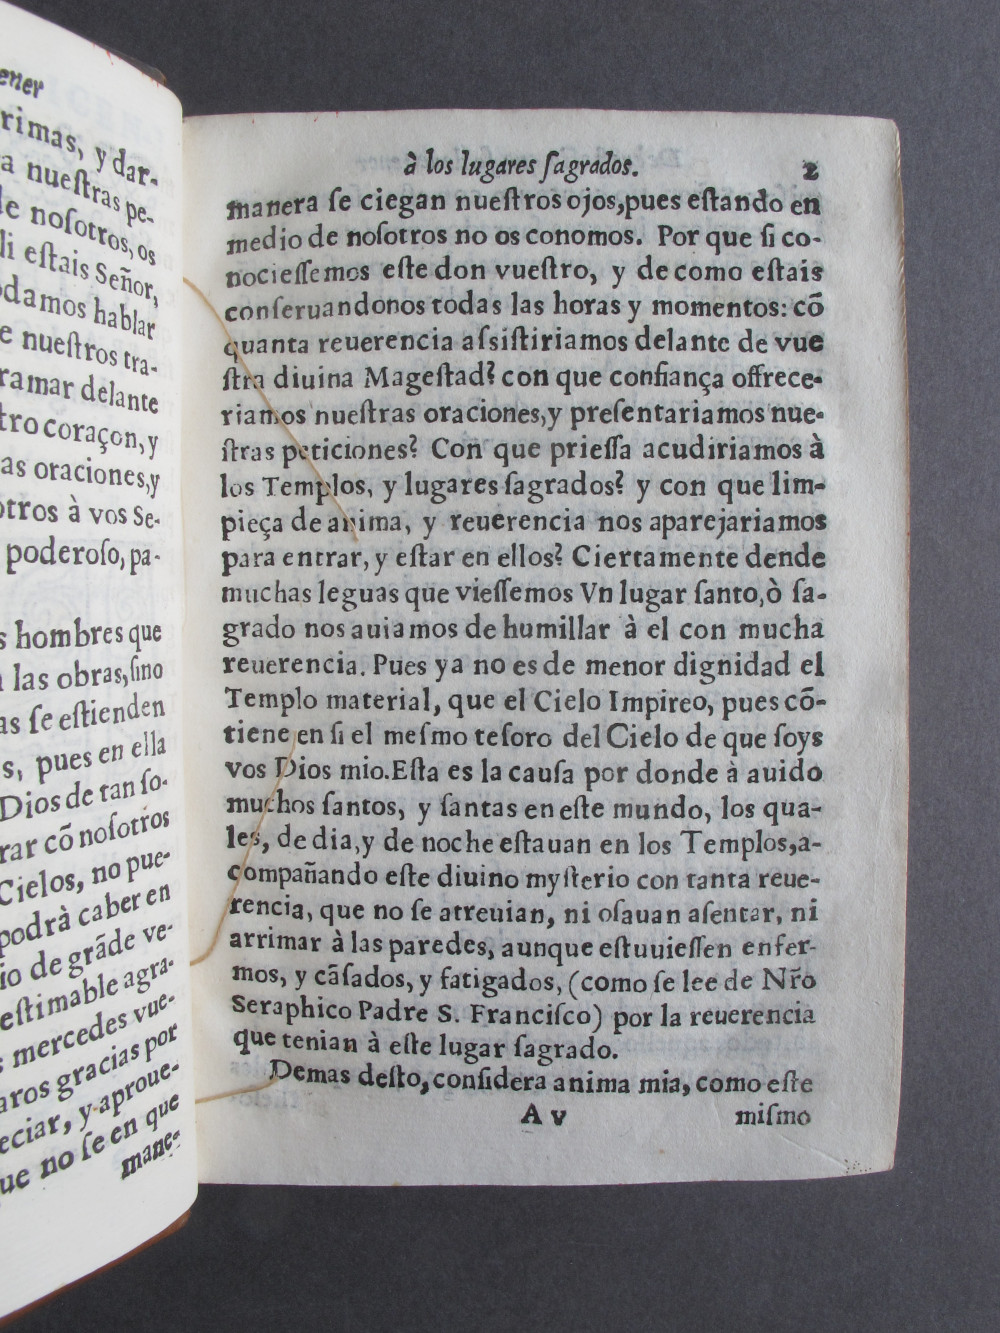 Folio A5 recto